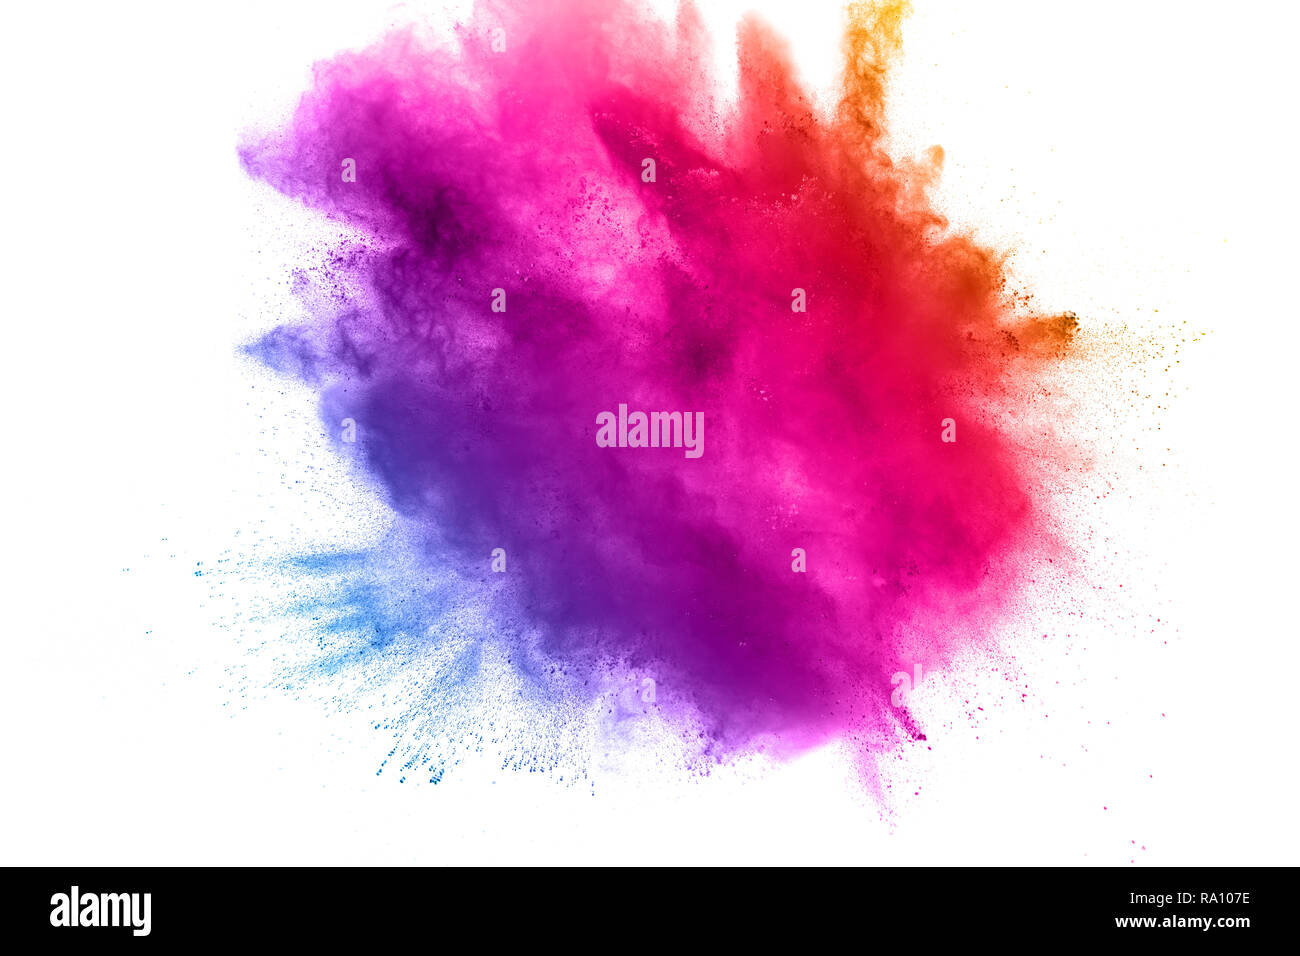 Abstrakte Multi Color Pulver Explosion auf weißem Hintergrund. Freeze Motion von Staubpartikeln Spritzwasser. Malte Holi im Festival. Stockfoto